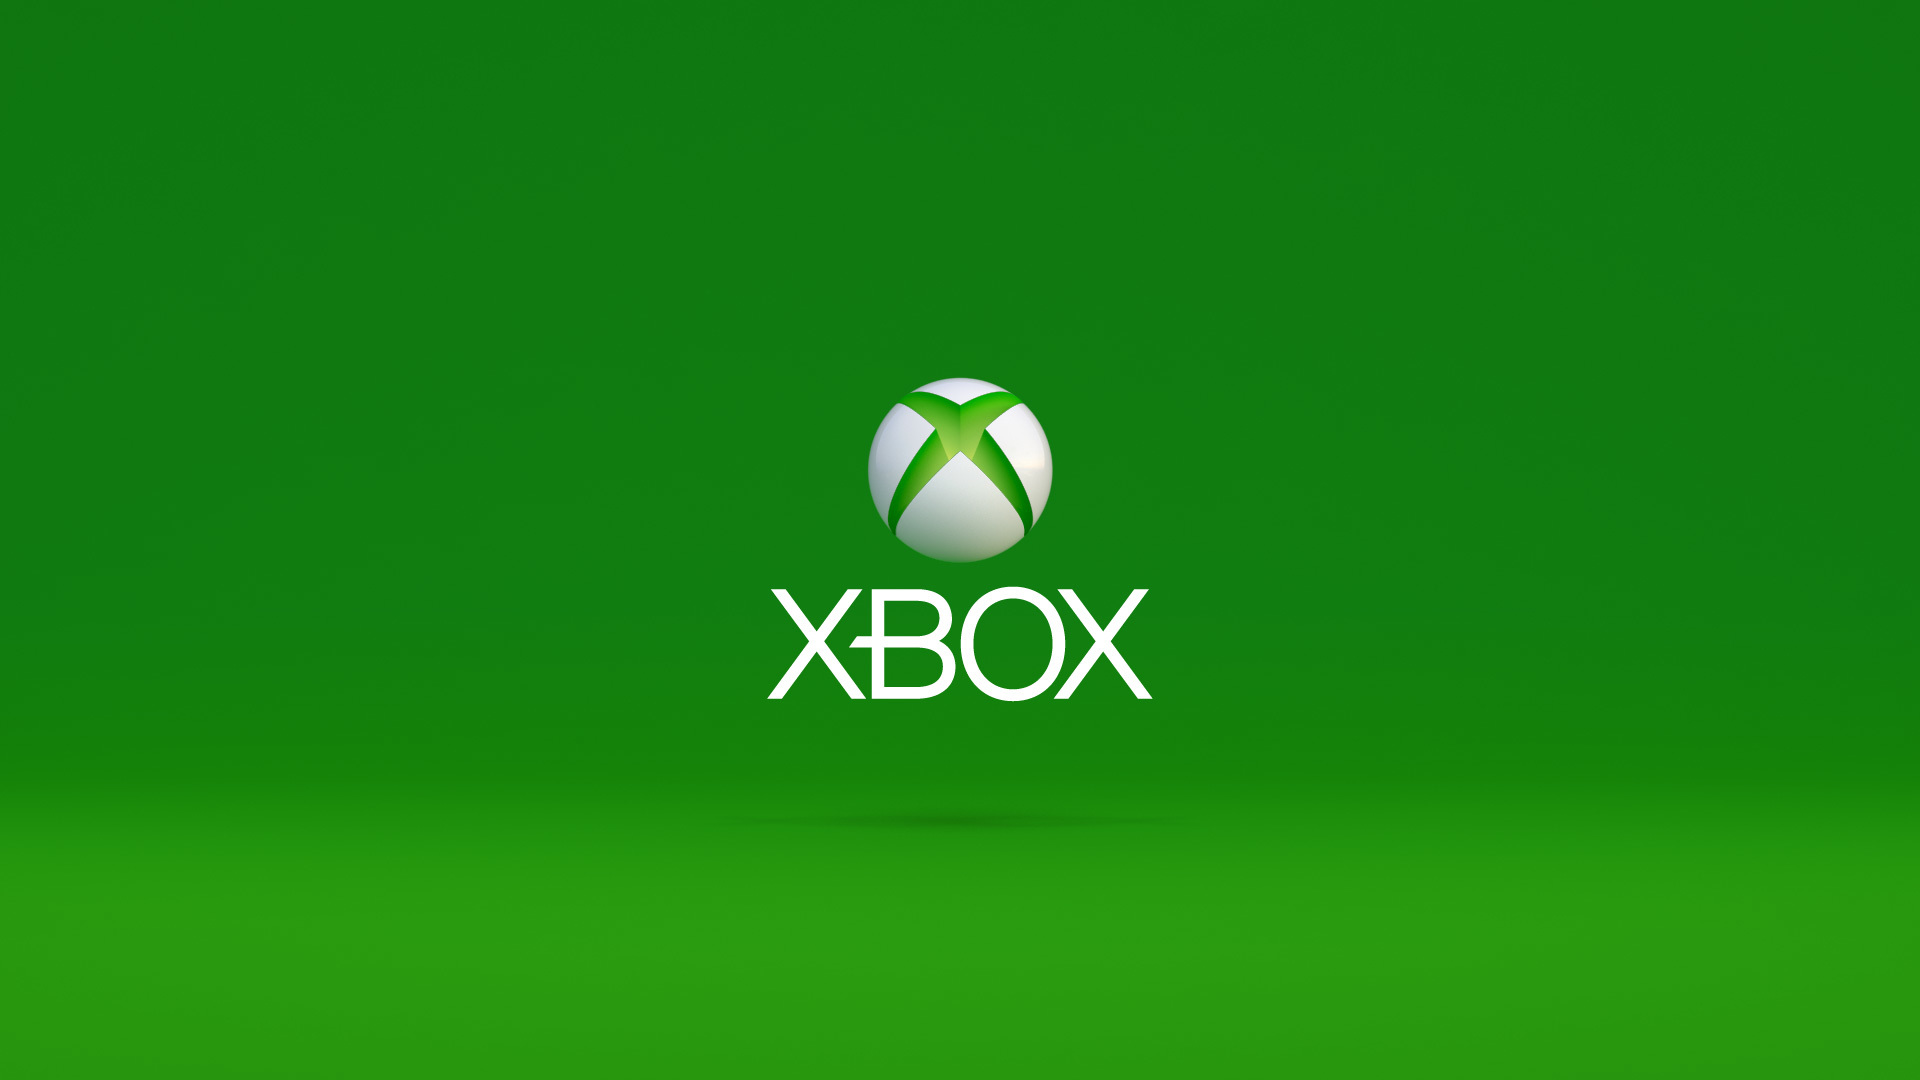 使用 U 盘或记忆卡将您的 Xbox 档案移至另一个 Xbox 360 主机